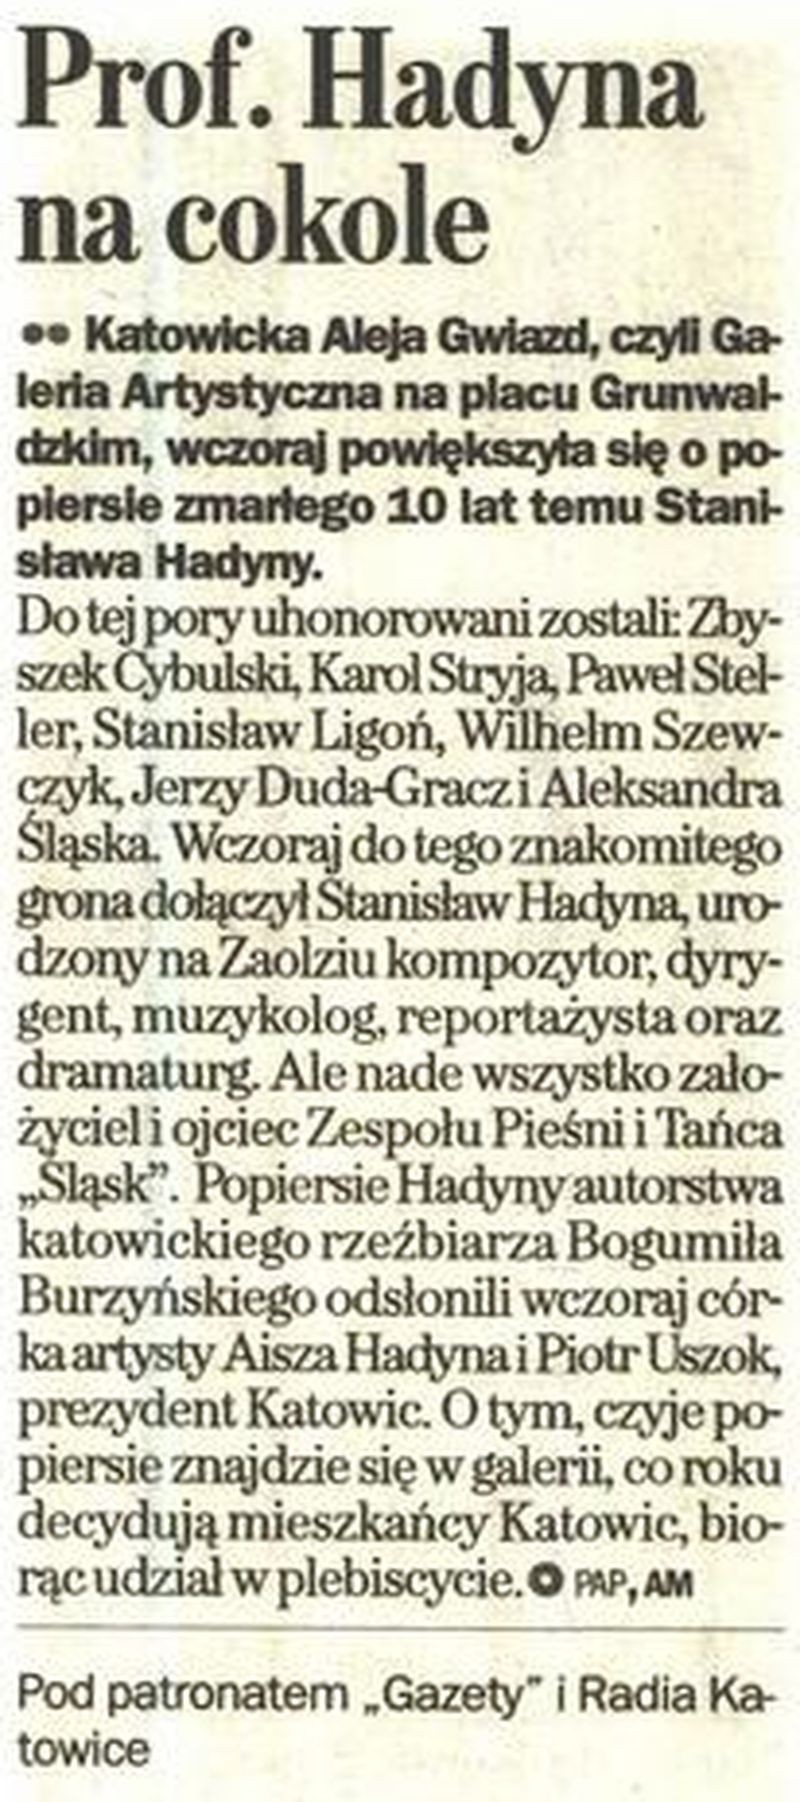 Prof. Hadyna na cokole - Gazeta Wyborcza w Katowicach